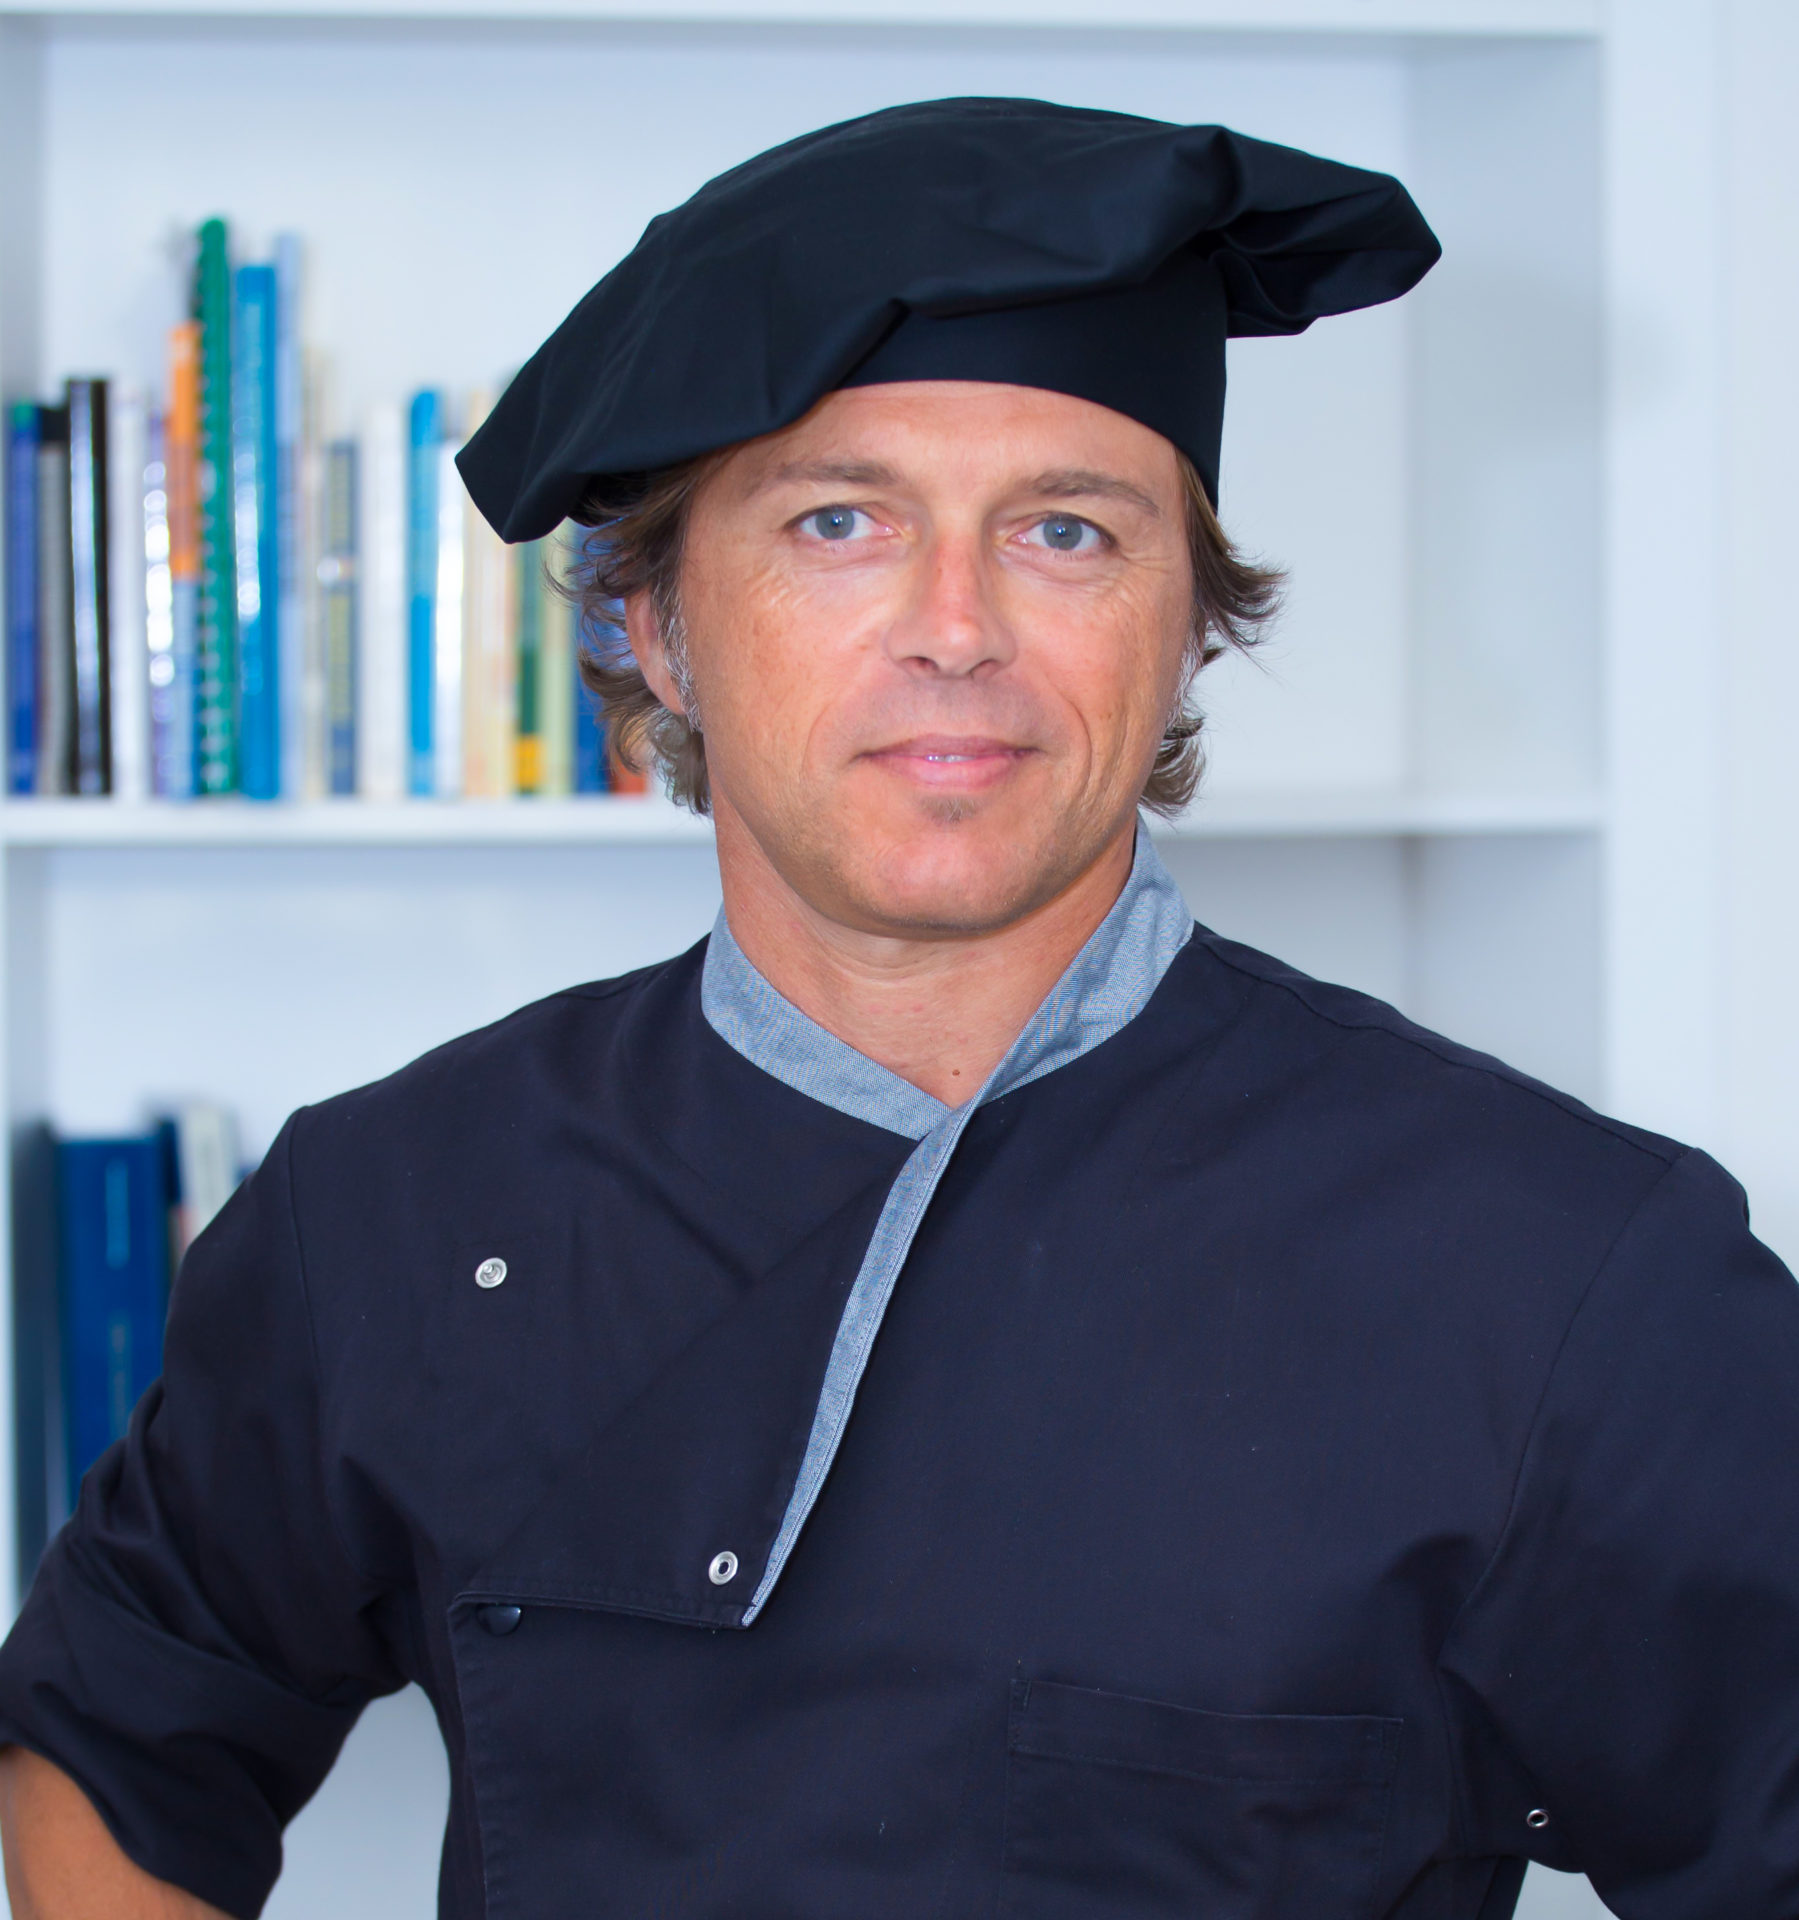 Daniele Galatolo è lo Chef esperto di Salute a Tavola che effettua i corsi di Cucina a casa tua in collaborazione con Studio Vircos Roma